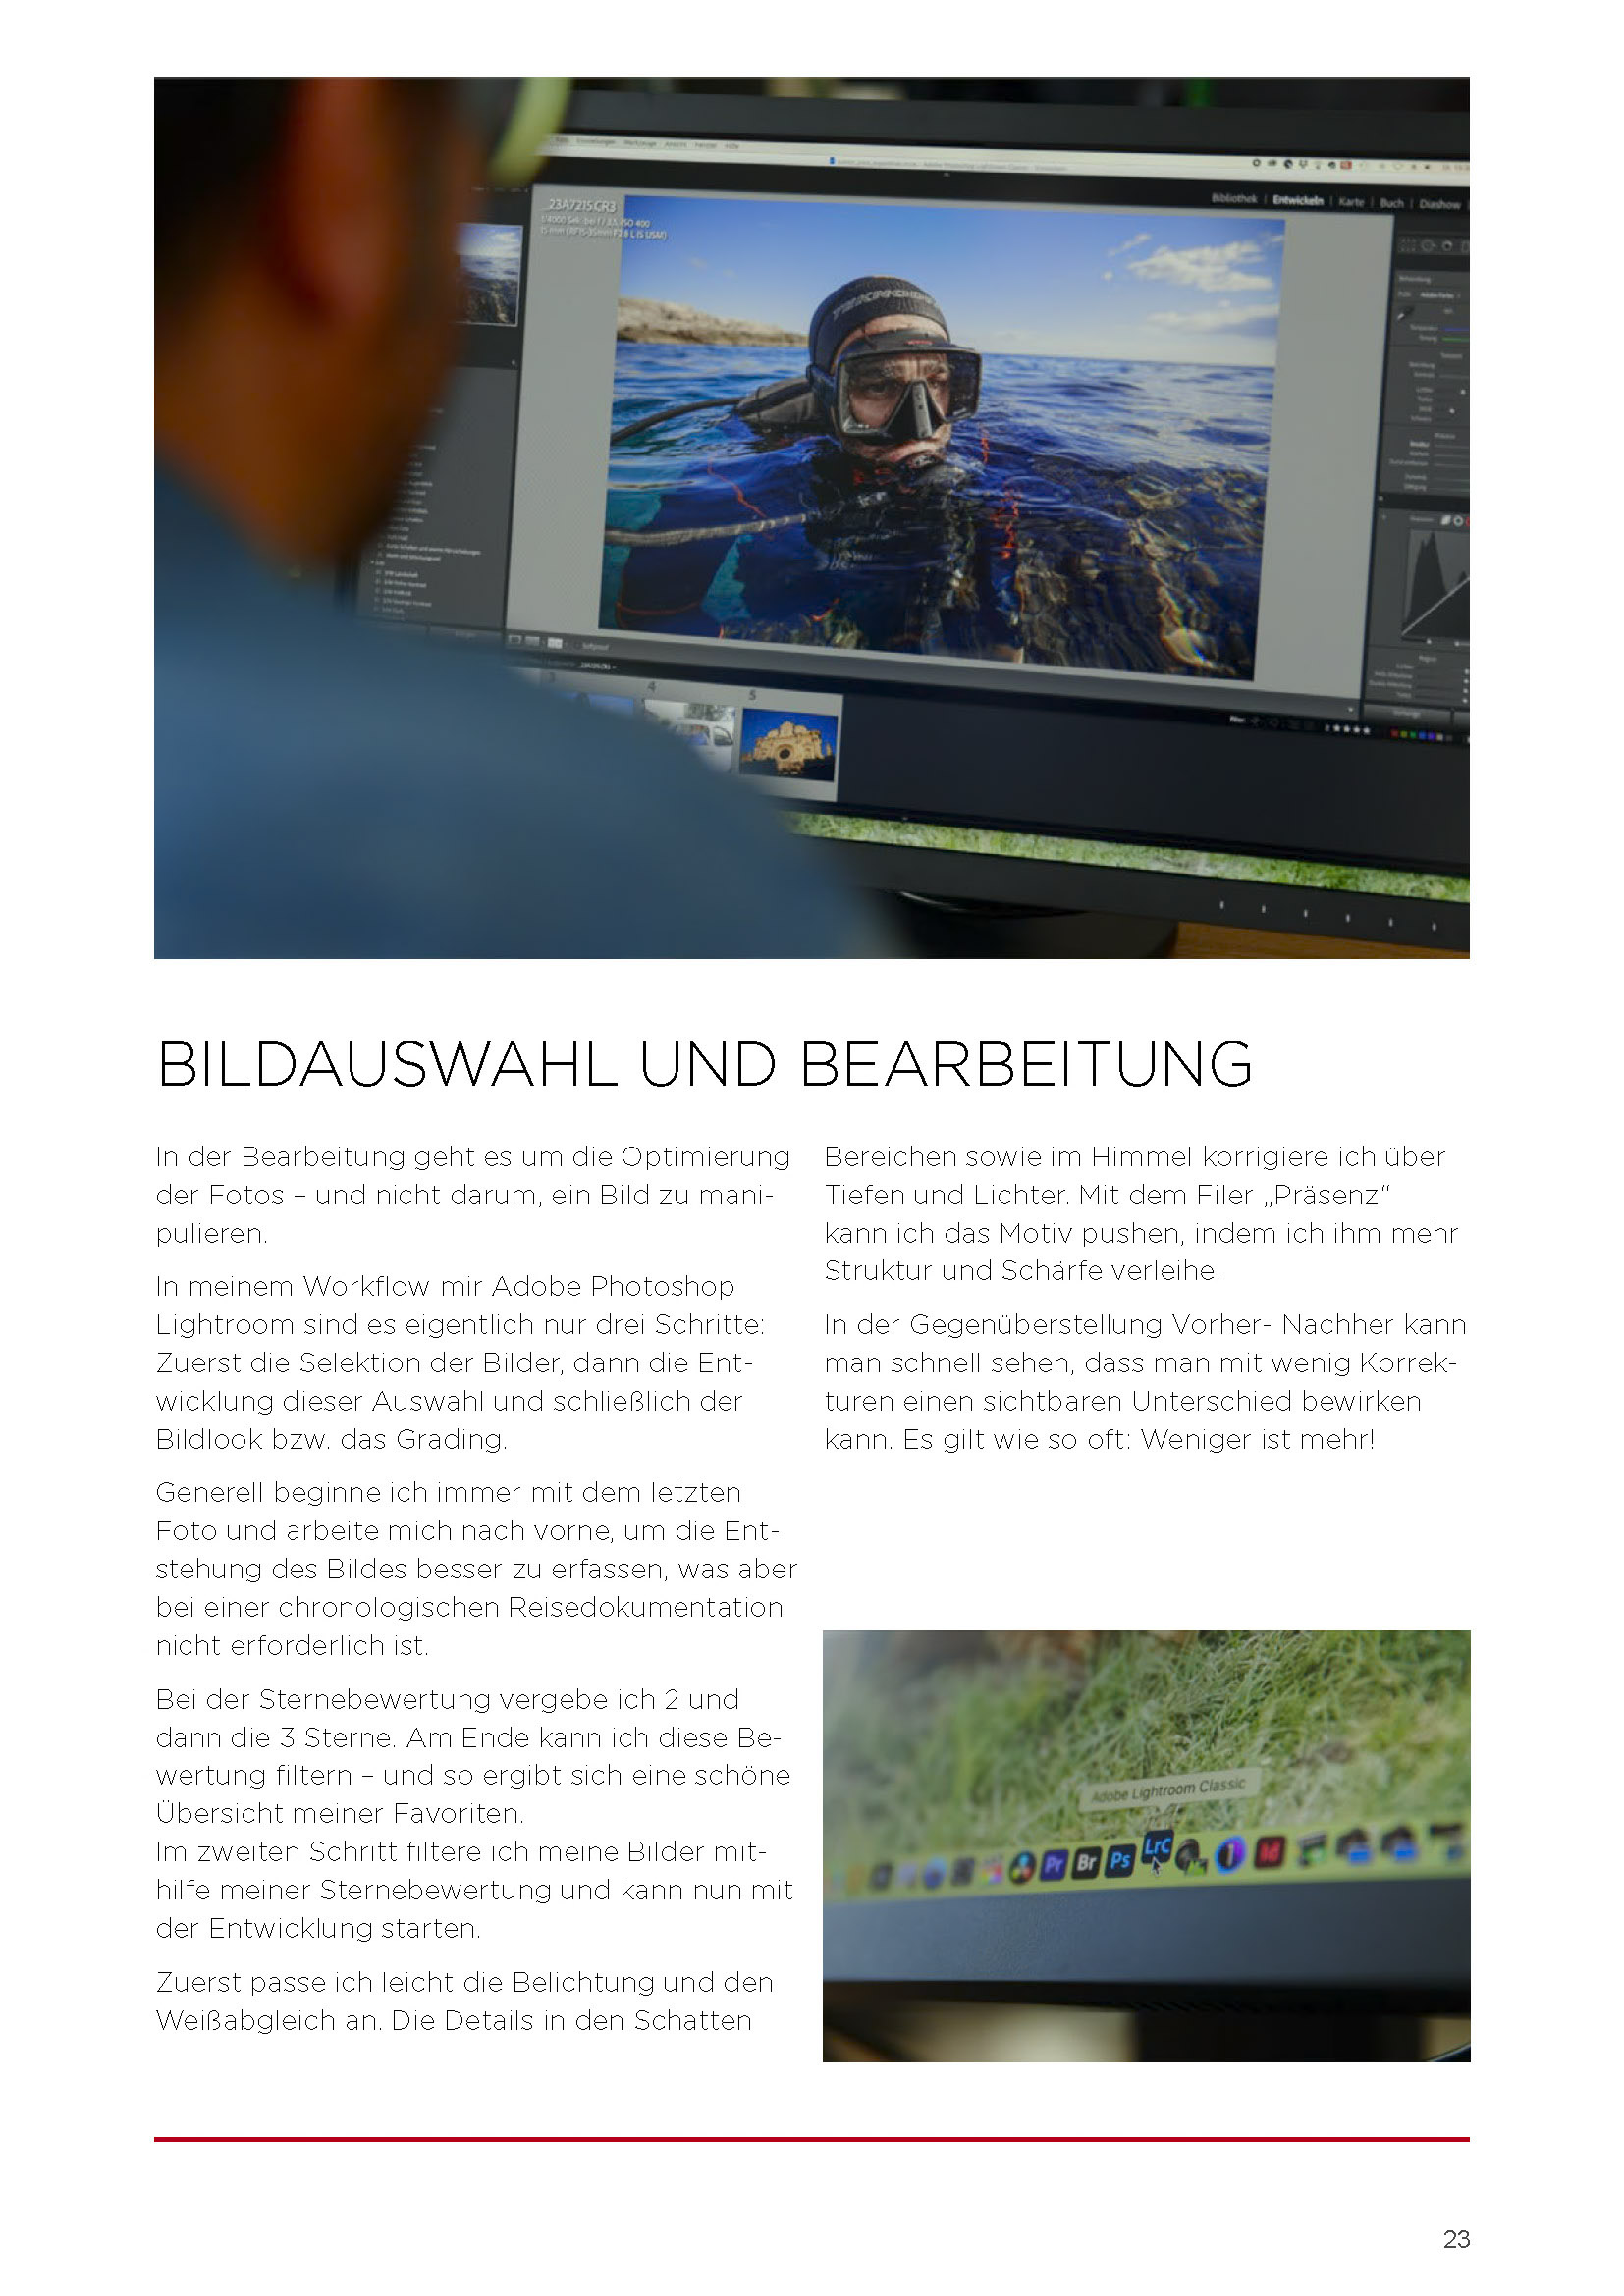 Screenshot der Adobe Photoshop-Software auf einem Computerbildschirm, der einen Bildbearbeitungsprozess mit verschiedenen sichtbaren Werkzeugen und Bedienfeldern zeigt. Im deutschen Text werden Fotoauswahl und Bearbeitungstechniken erläutert. © Fotografie Tomas Rodriguez